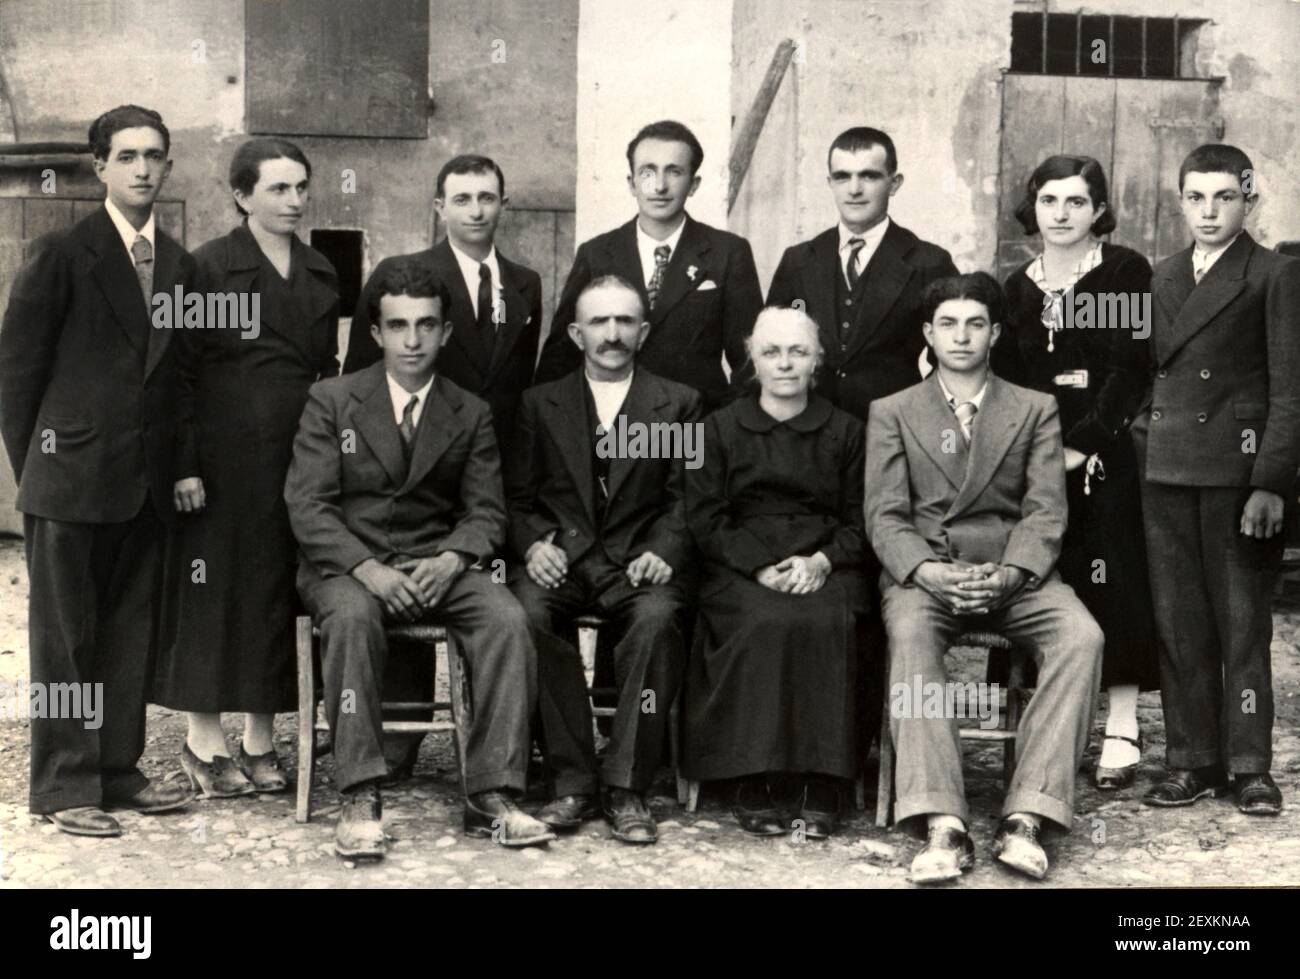 1935 CA , Campegine , Reggio Emilia , ITALIE : les partisans catholiques italiens anti-fascistes sept frères de la famille CERVI , torturés et tués par les fascistes le jour du 28 décembre 1943 : ETTORE ( 22 ans ), OVIDIO ( 25 ans ), AGOSTINO ( 27 ans ), FERDINANDO (32 ans), ALDO (34 ans ), ANTENORE ( 39 ans ) et GELINDO CERVI ( 42 ans ). Dans cette photo prise en 1935 ca, les 7 frères avec leurs parents ALCIDE CERVI ( 1875 - 1970 ) et GENOVEFFA COCCONI ( 1876 - 1944 ) et les deux sœurs ont survécu RINA et DIOMIRA . Carte postale des années 1950 , photographe inconnu . - FRATELLI Sette 7 - RÉSISTANCE - ritrat Banque D'Images